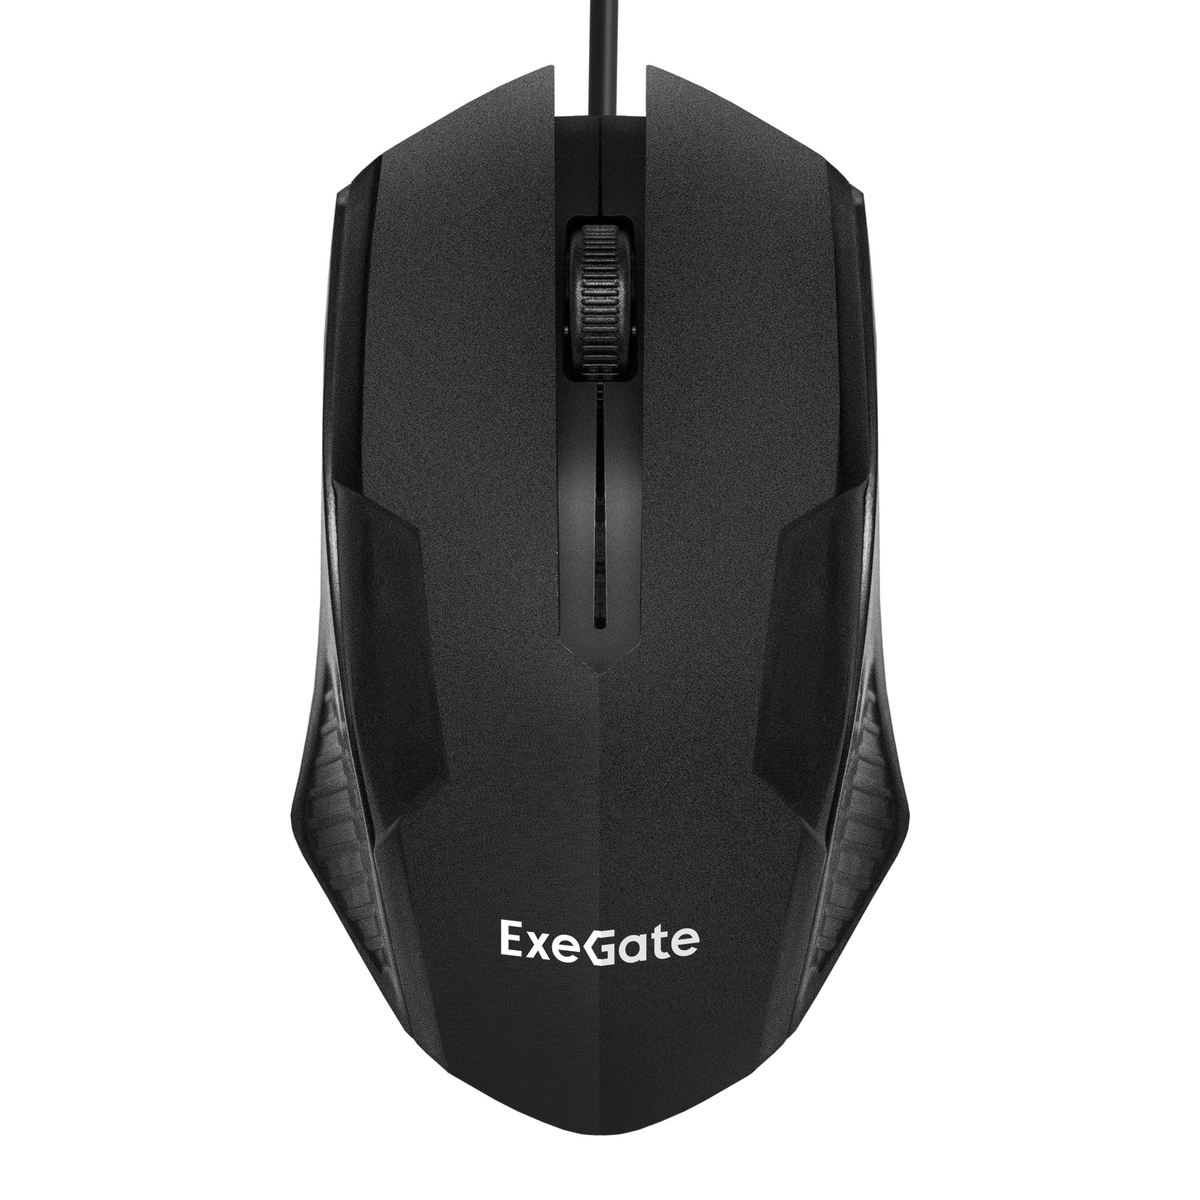 Мышь ExeGate Professional Standard SH-9025 (USB, оптическая, 1000dpi, 3 кнопки и колесо прокрутки, длина кабеля 1,35м, черная, Color Box)